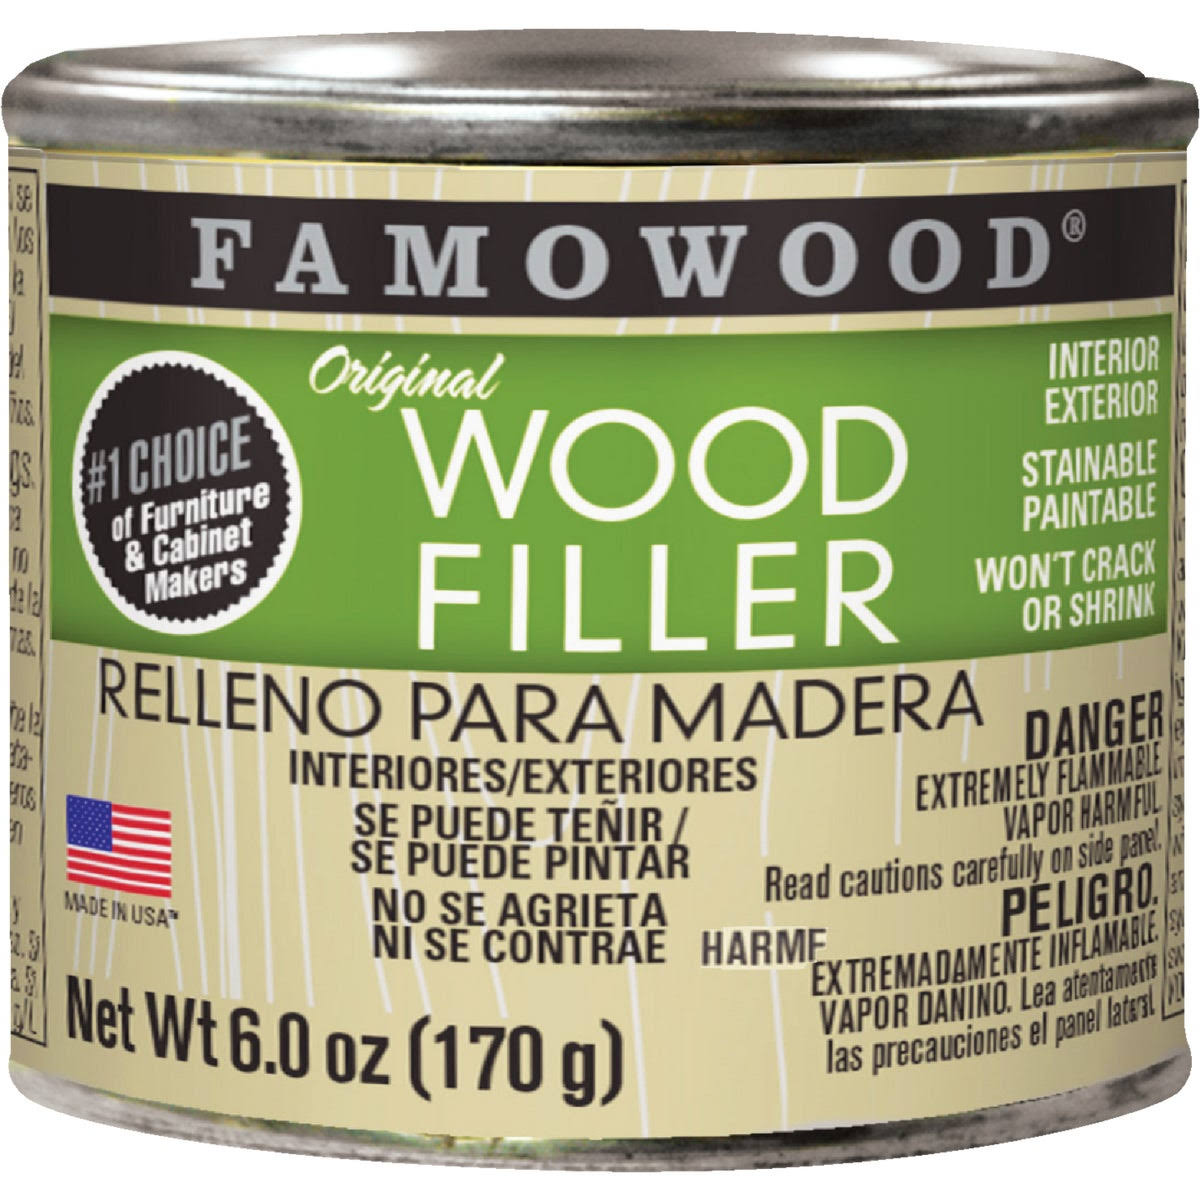 Famowood Original Wood Filler - Alder, 170g